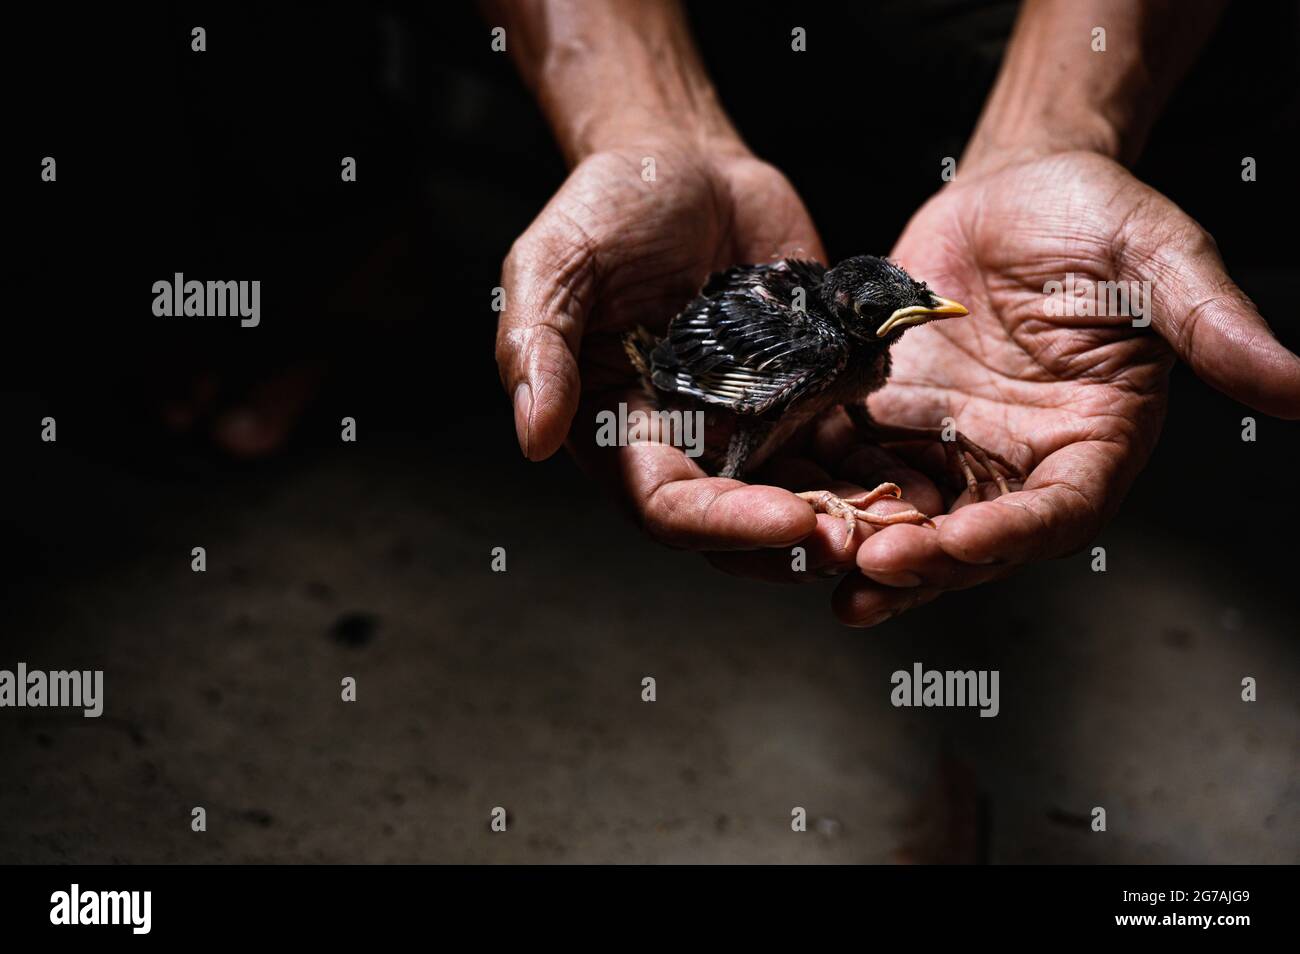 Un poussin de myna de la jungle (Acridotheres fuscus) est tombé au sol du nid. Ce membre de l'oiseau de famille étoilé se trouve principalement dans le continent du sous-continent indien. Un restaurationniste sauve le bébé oiseau à Tehatta, Bengale-Occidental; Inde. Banque D'Images